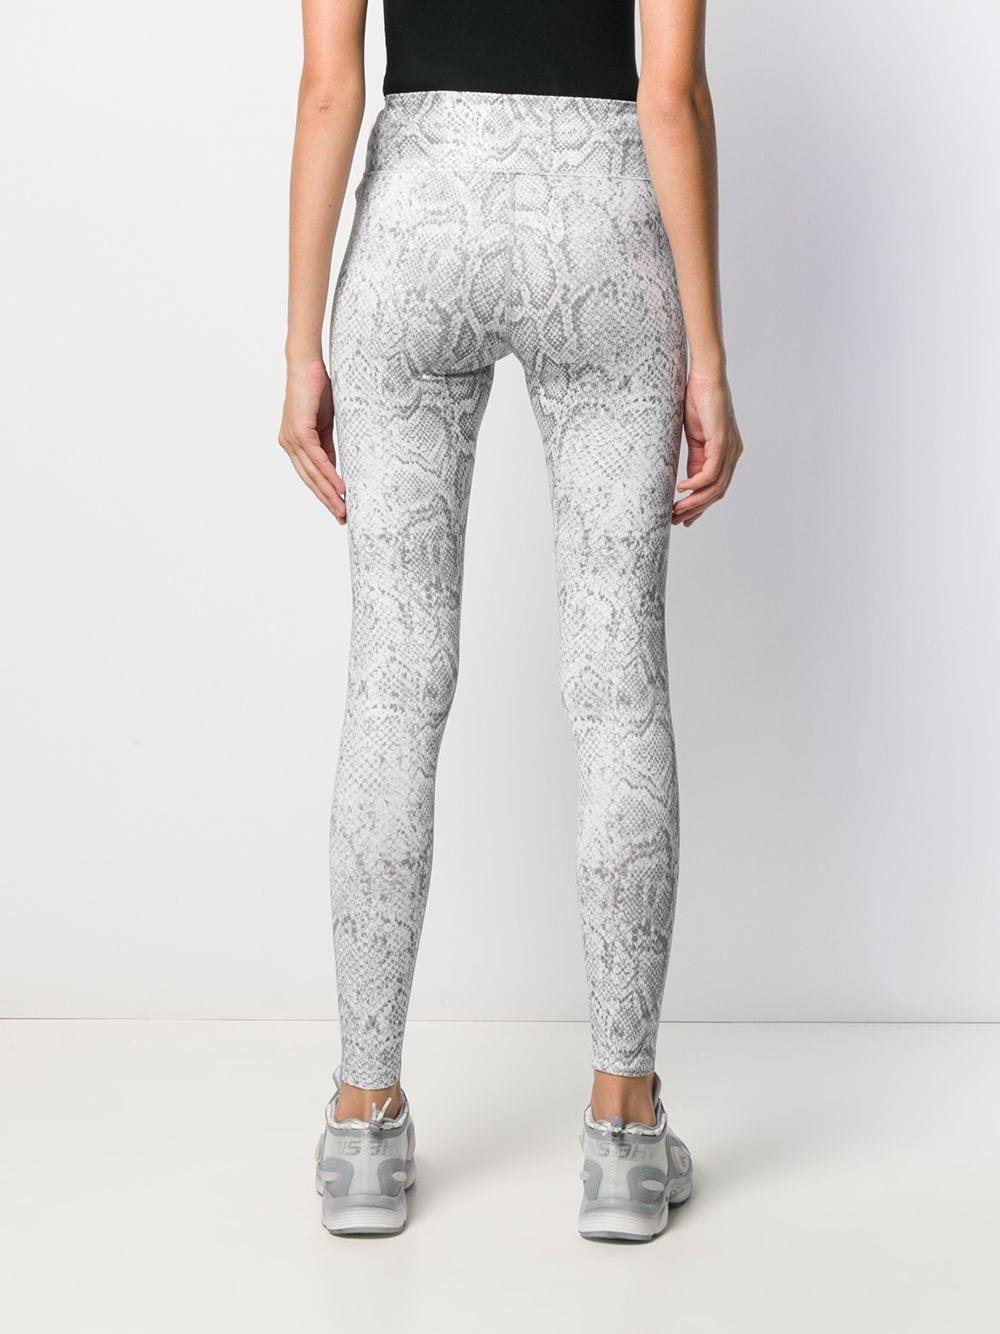 Nike Synthetic Snake-effect Print Zip leggings in Grey (Grey) - Lyst